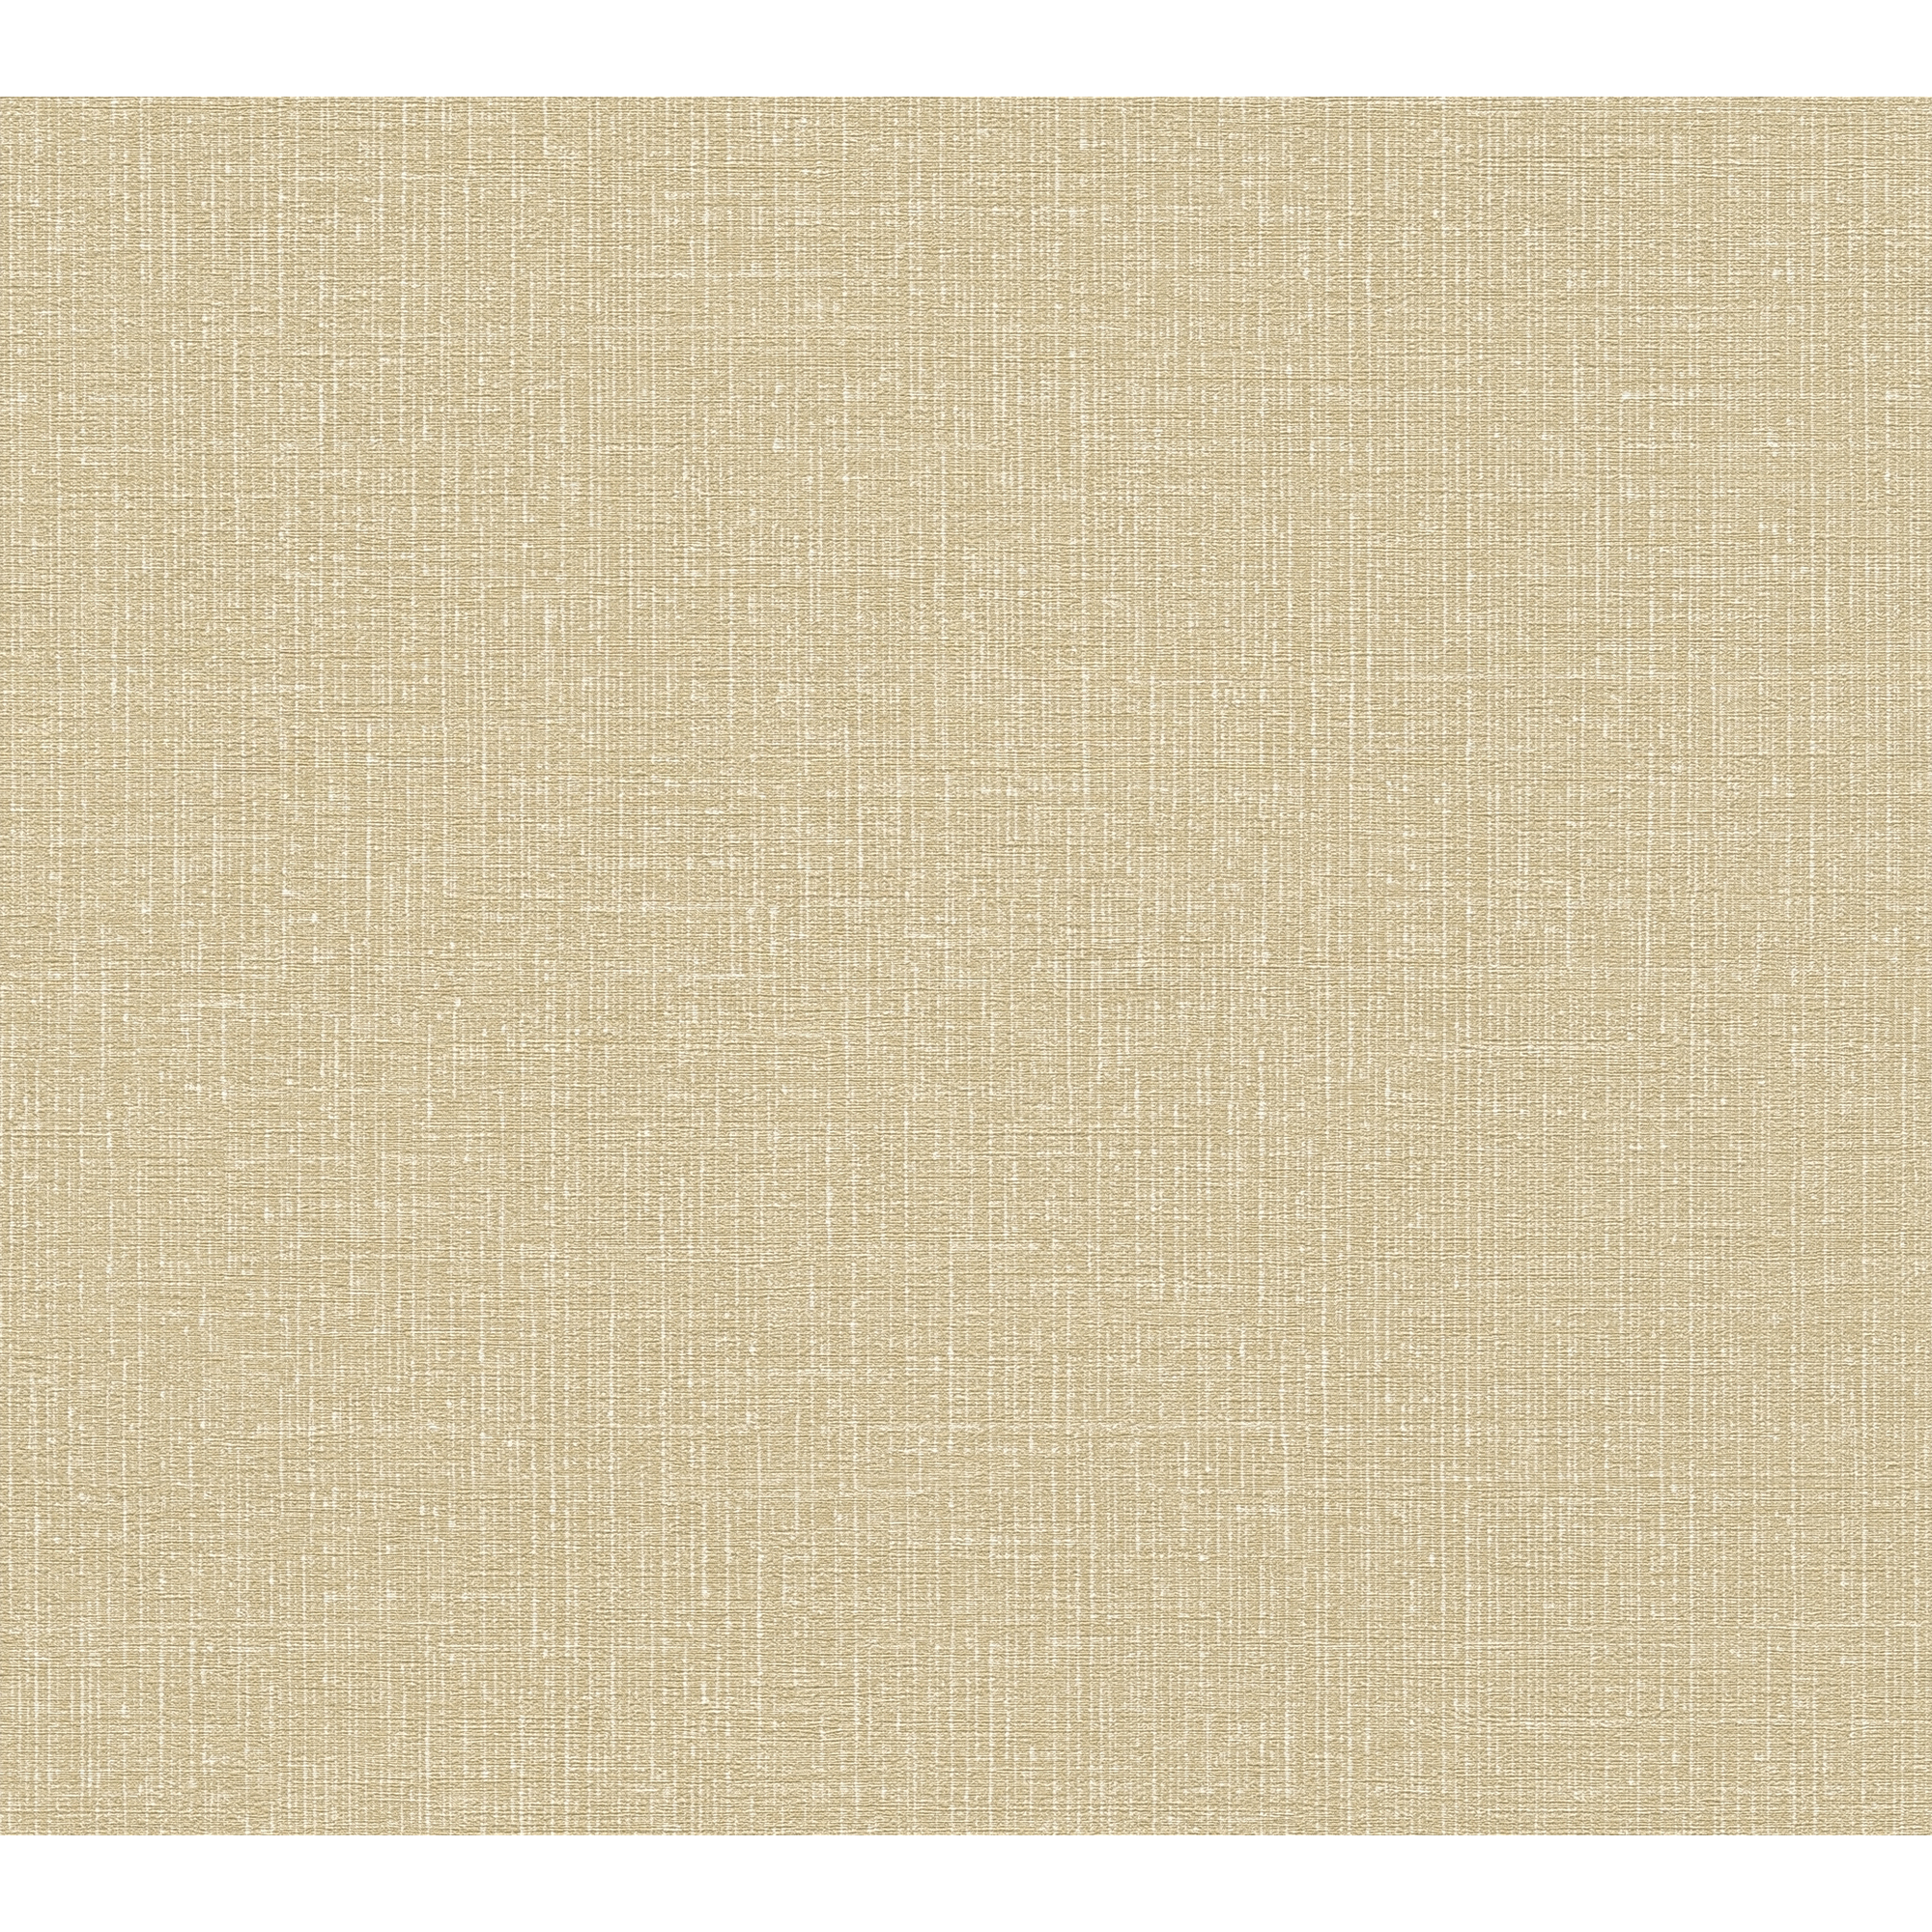 Vliestapete 'My Home. My Spa.' Uni Leinenstruktur beige/weiß 10,05 x 0,53 m + product picture